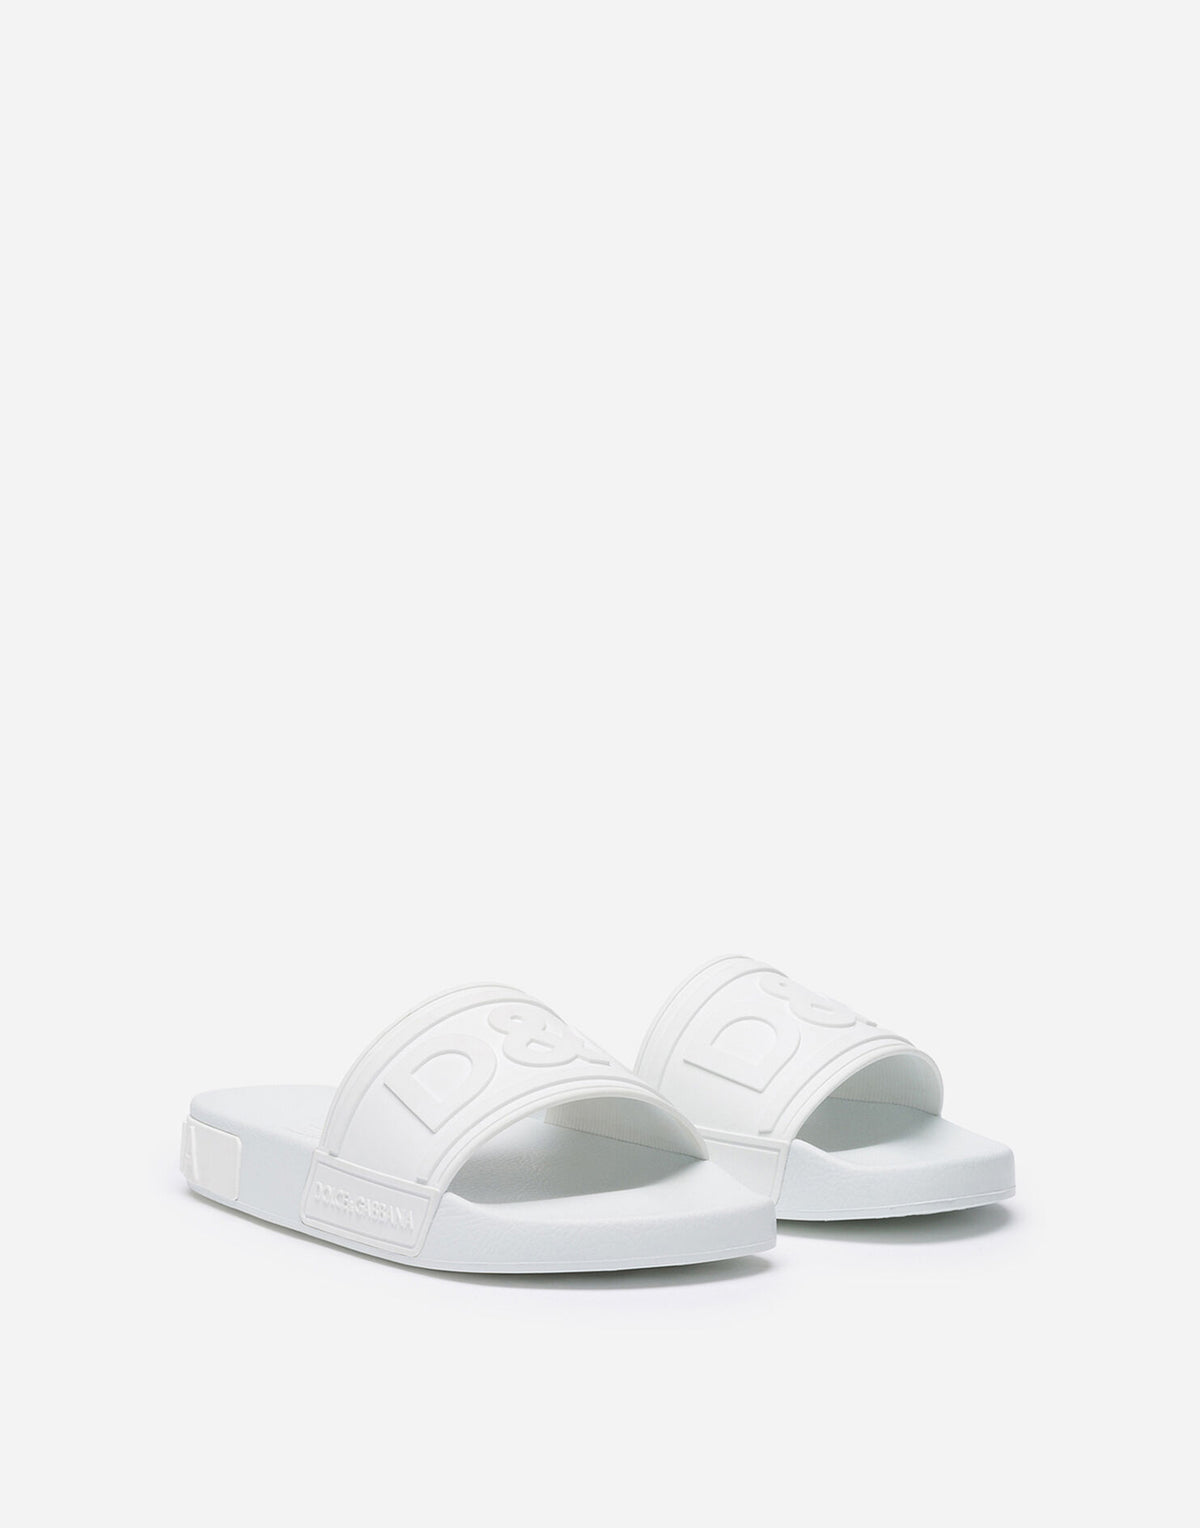 Dolce & Gabbana White Rubber Beachwear Slides